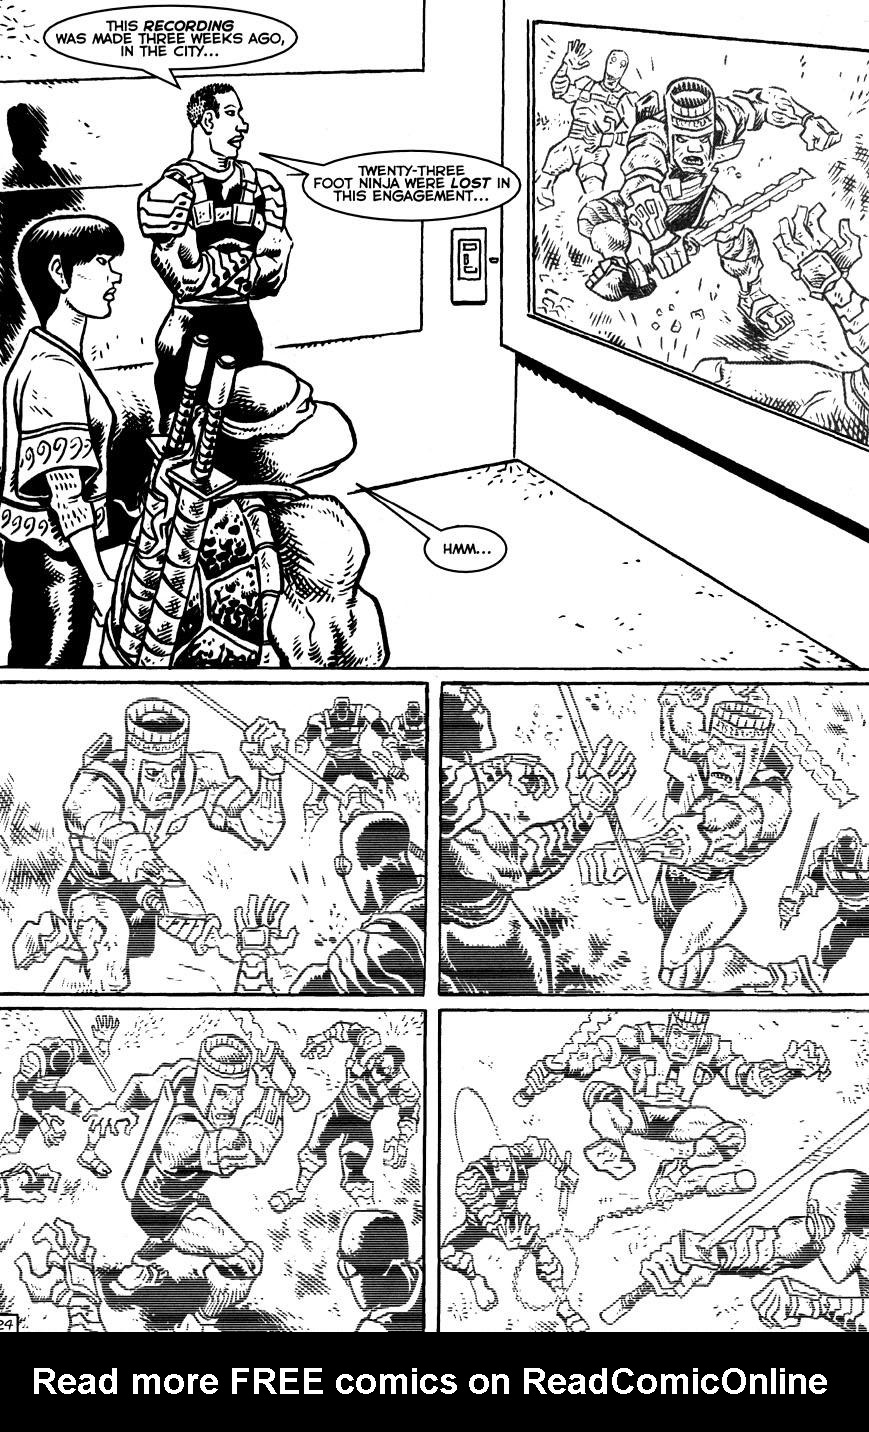 Read online TMNT: Teenage Mutant Ninja Turtles comic -  Issue #14 - 26